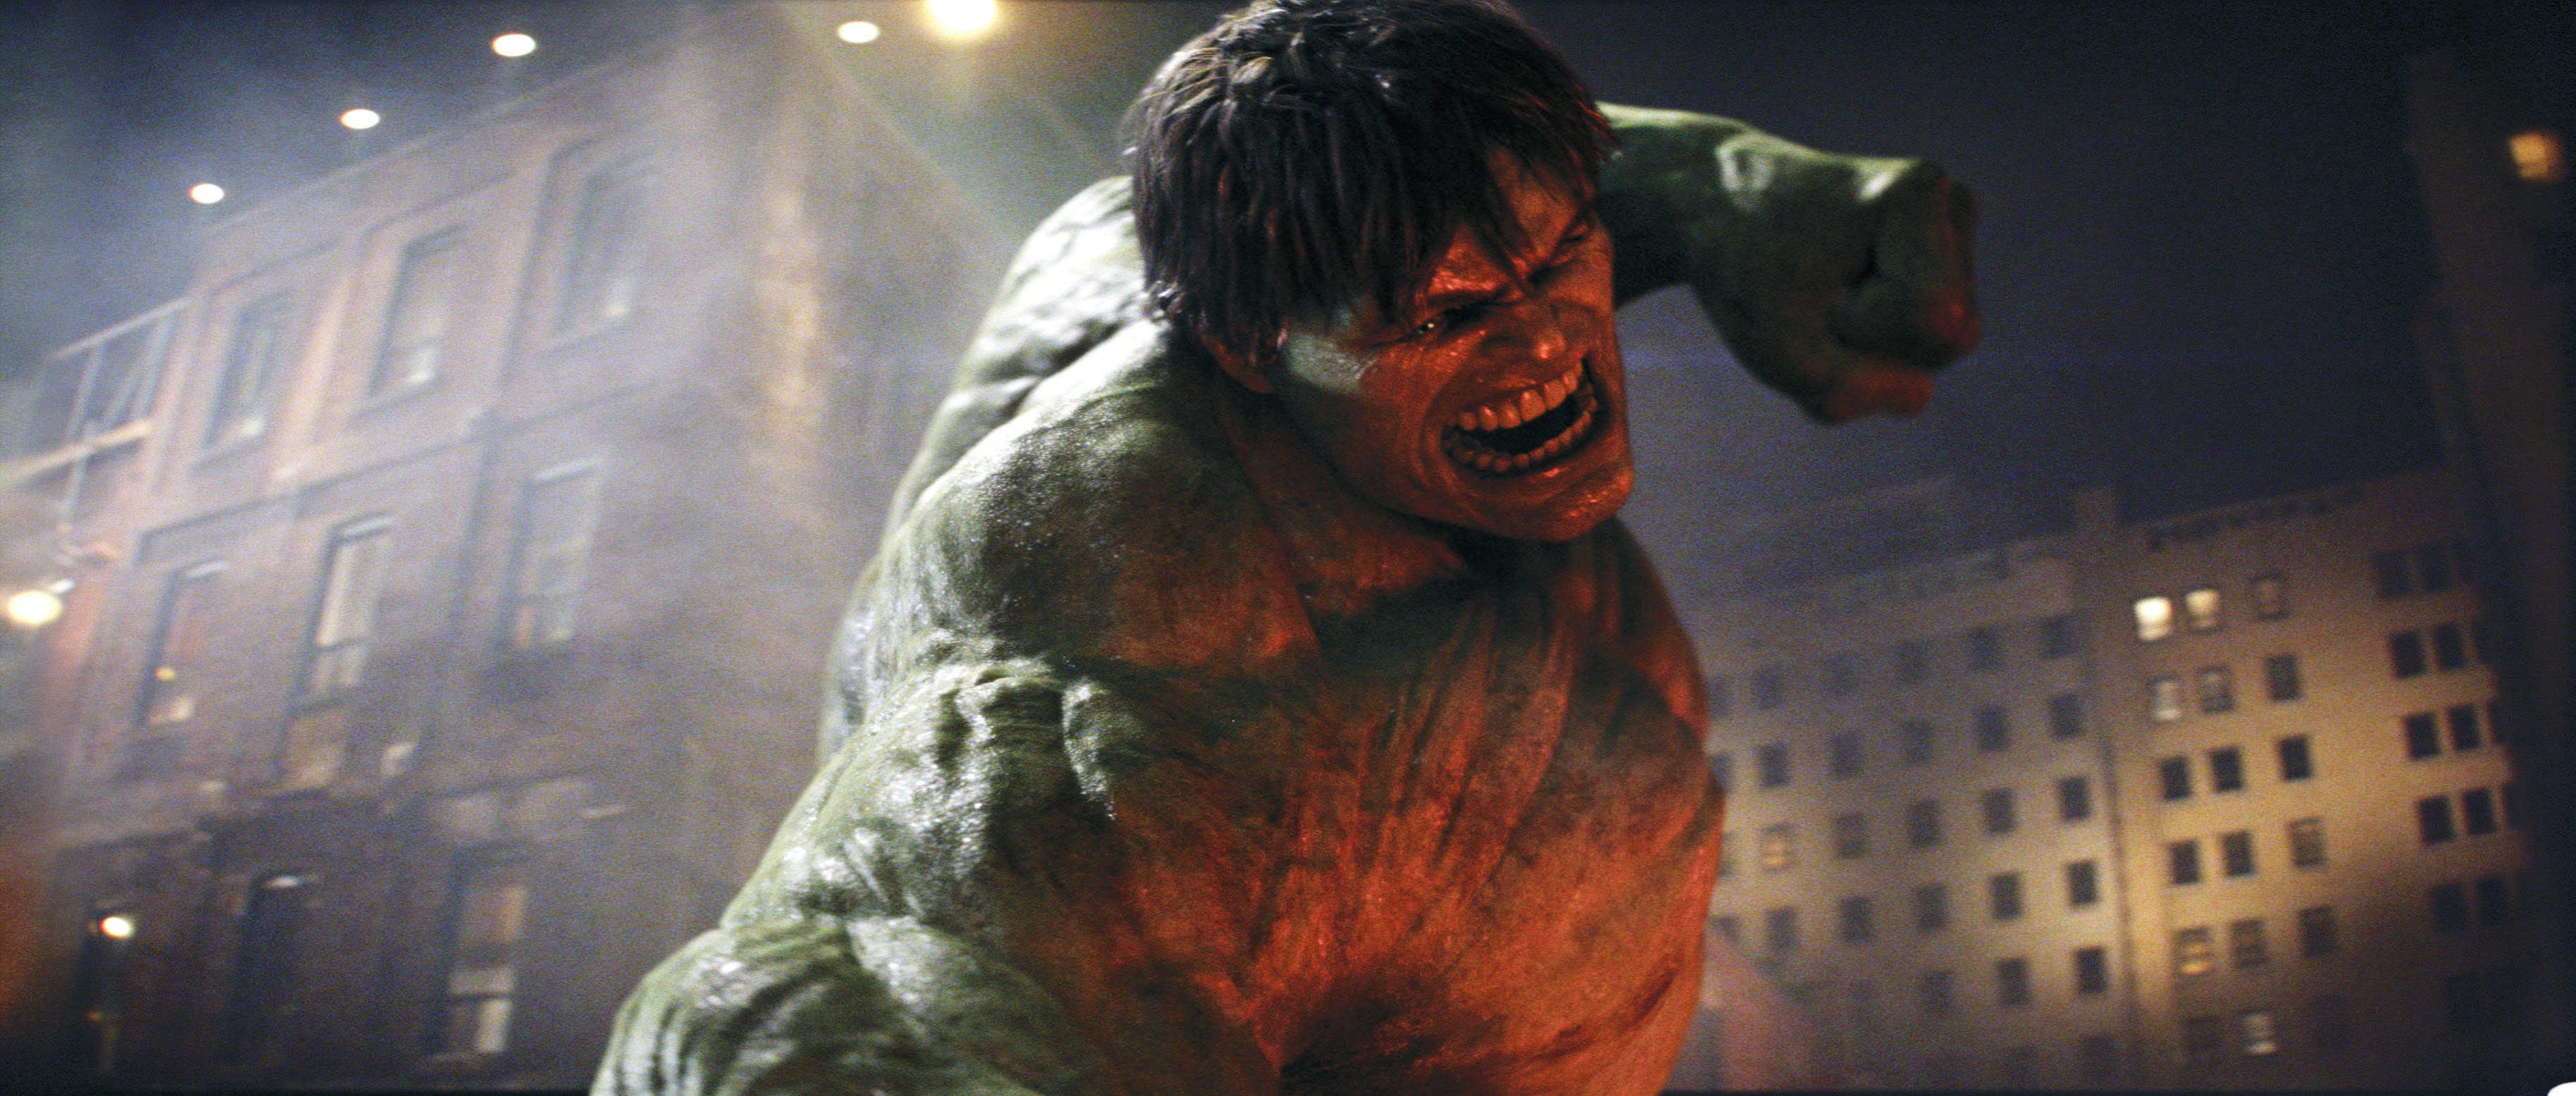 Халк 1 часть. Невероятный Халк. Невероятный Халк (2008) (the incredible Hulk).